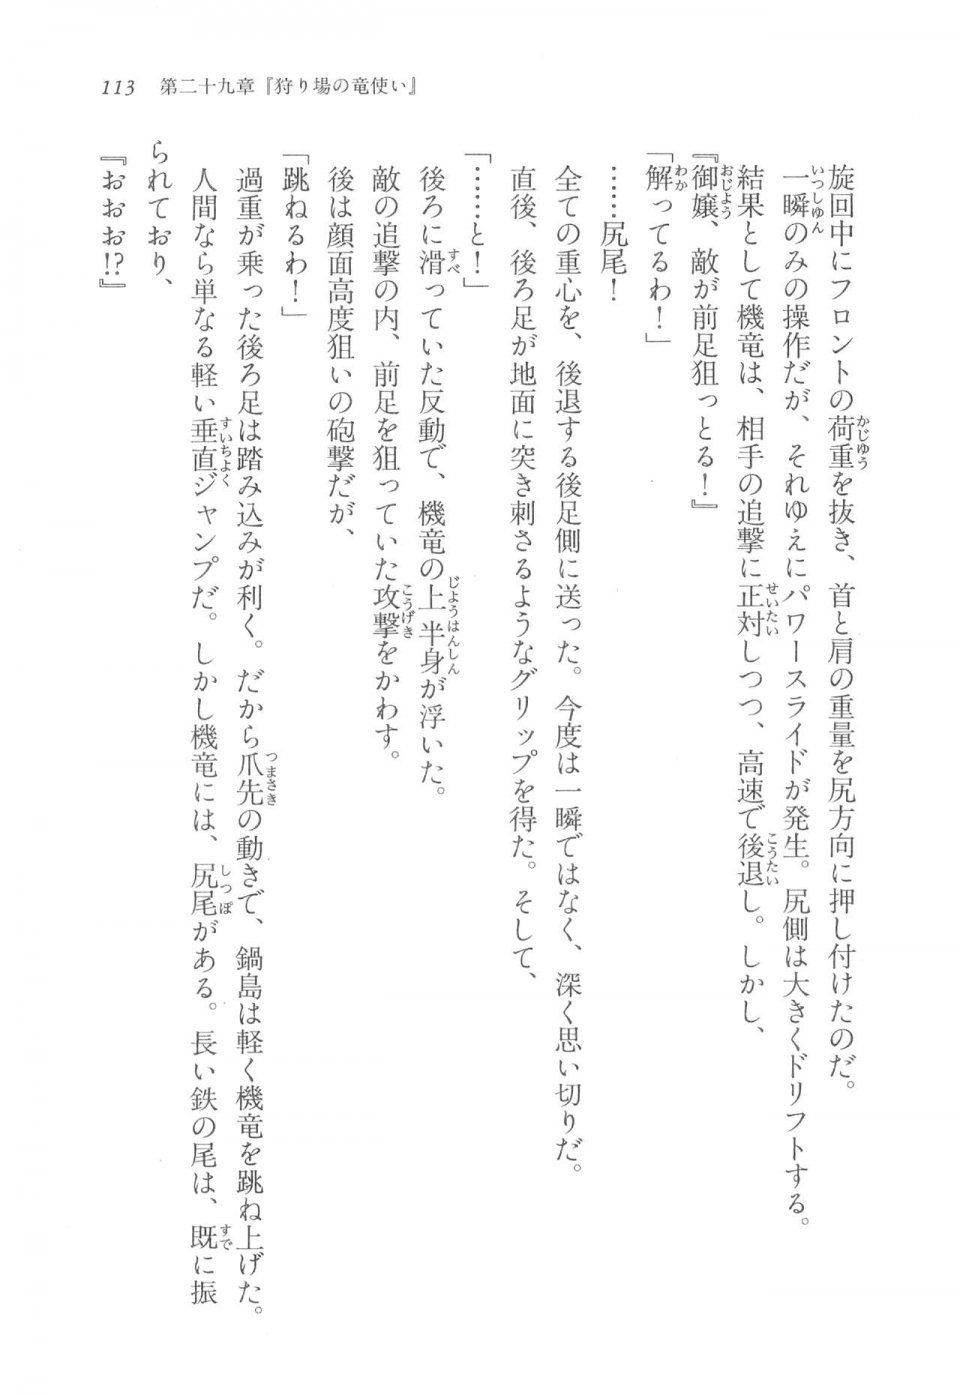 Kyoukai Senjou no Horizon LN Vol 17(7B) - Photo #113